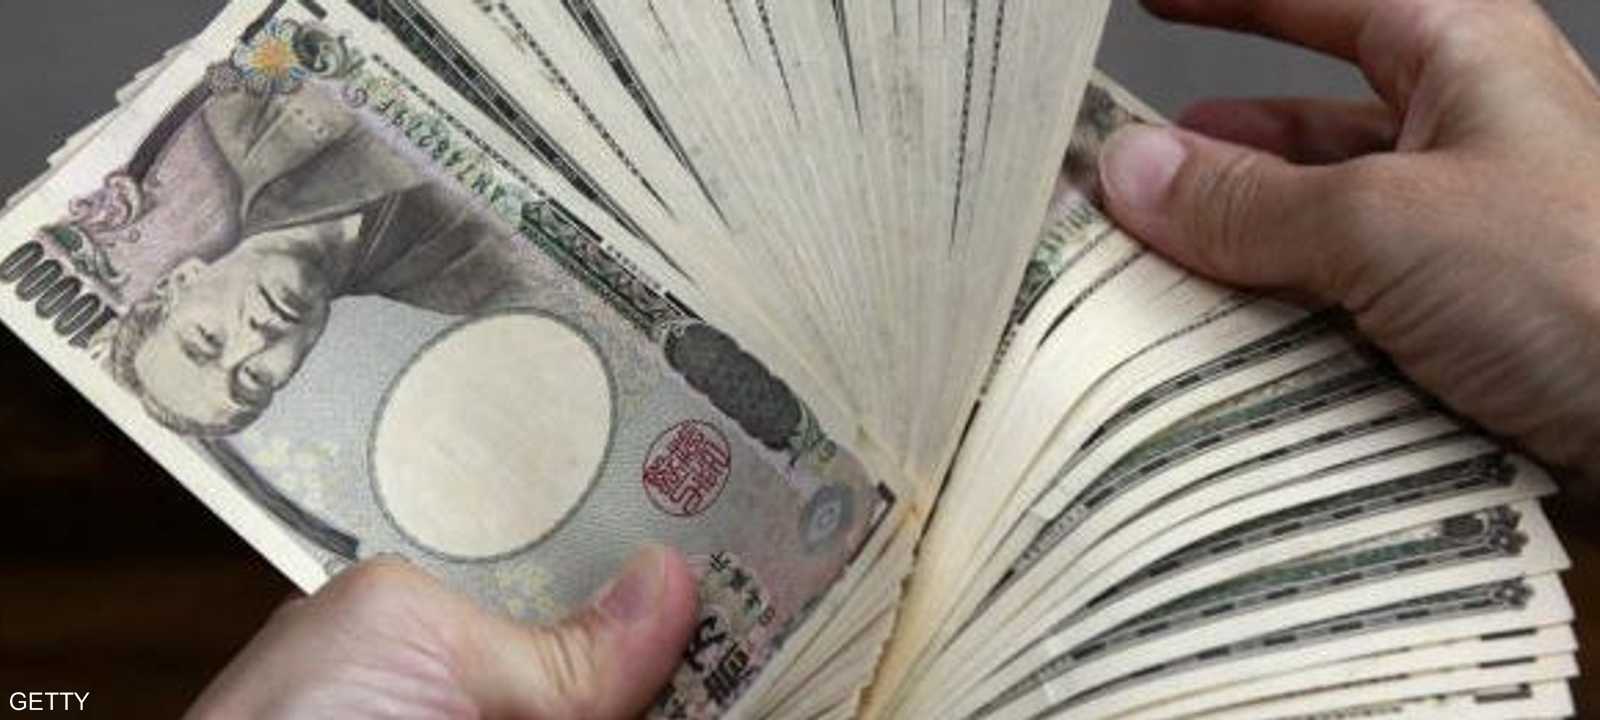 أوراق نقدية من الين الياباني